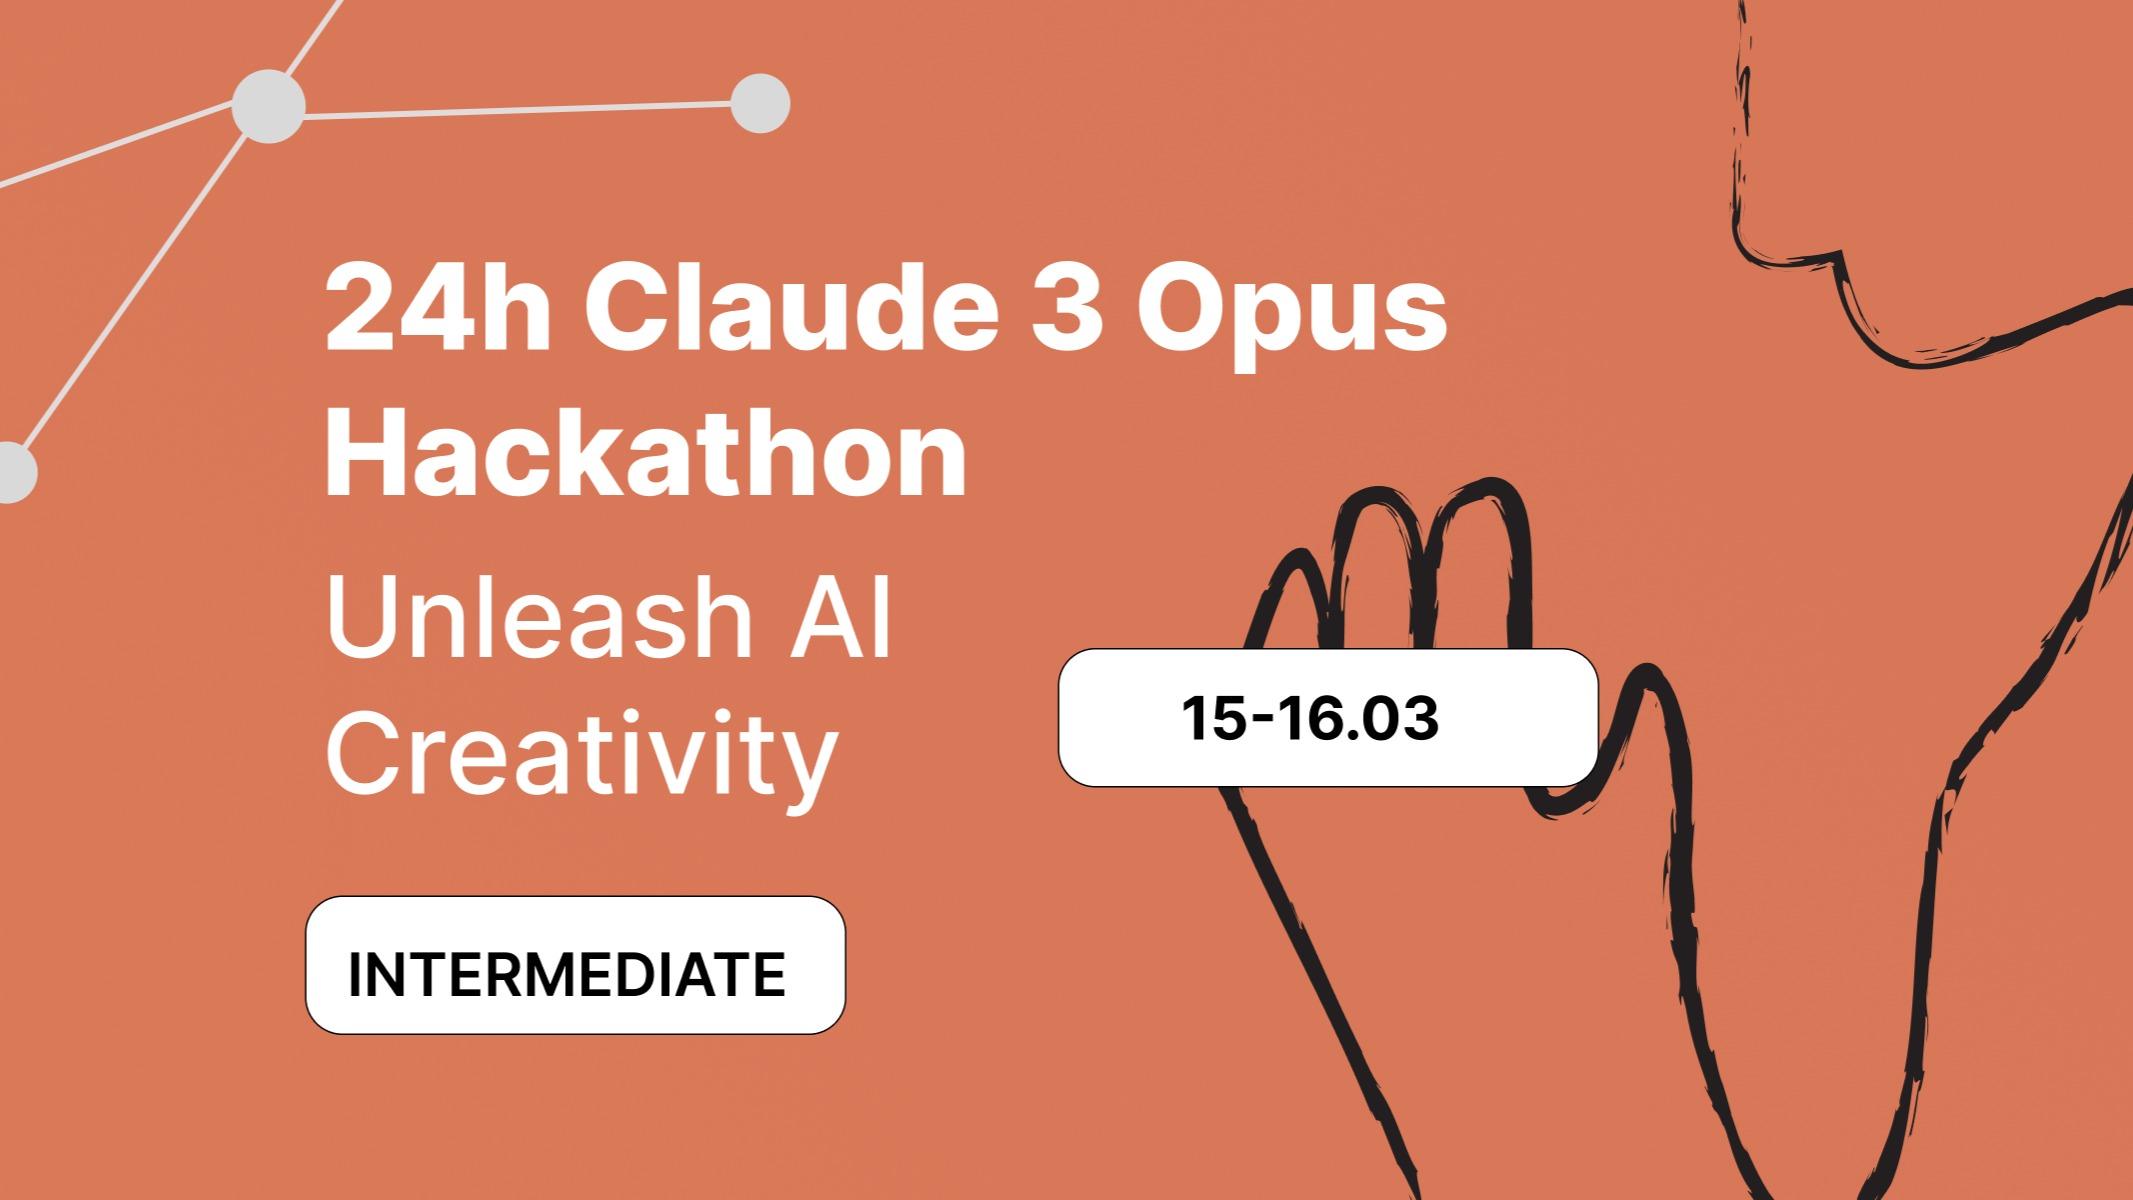 24h Claude Hackathon